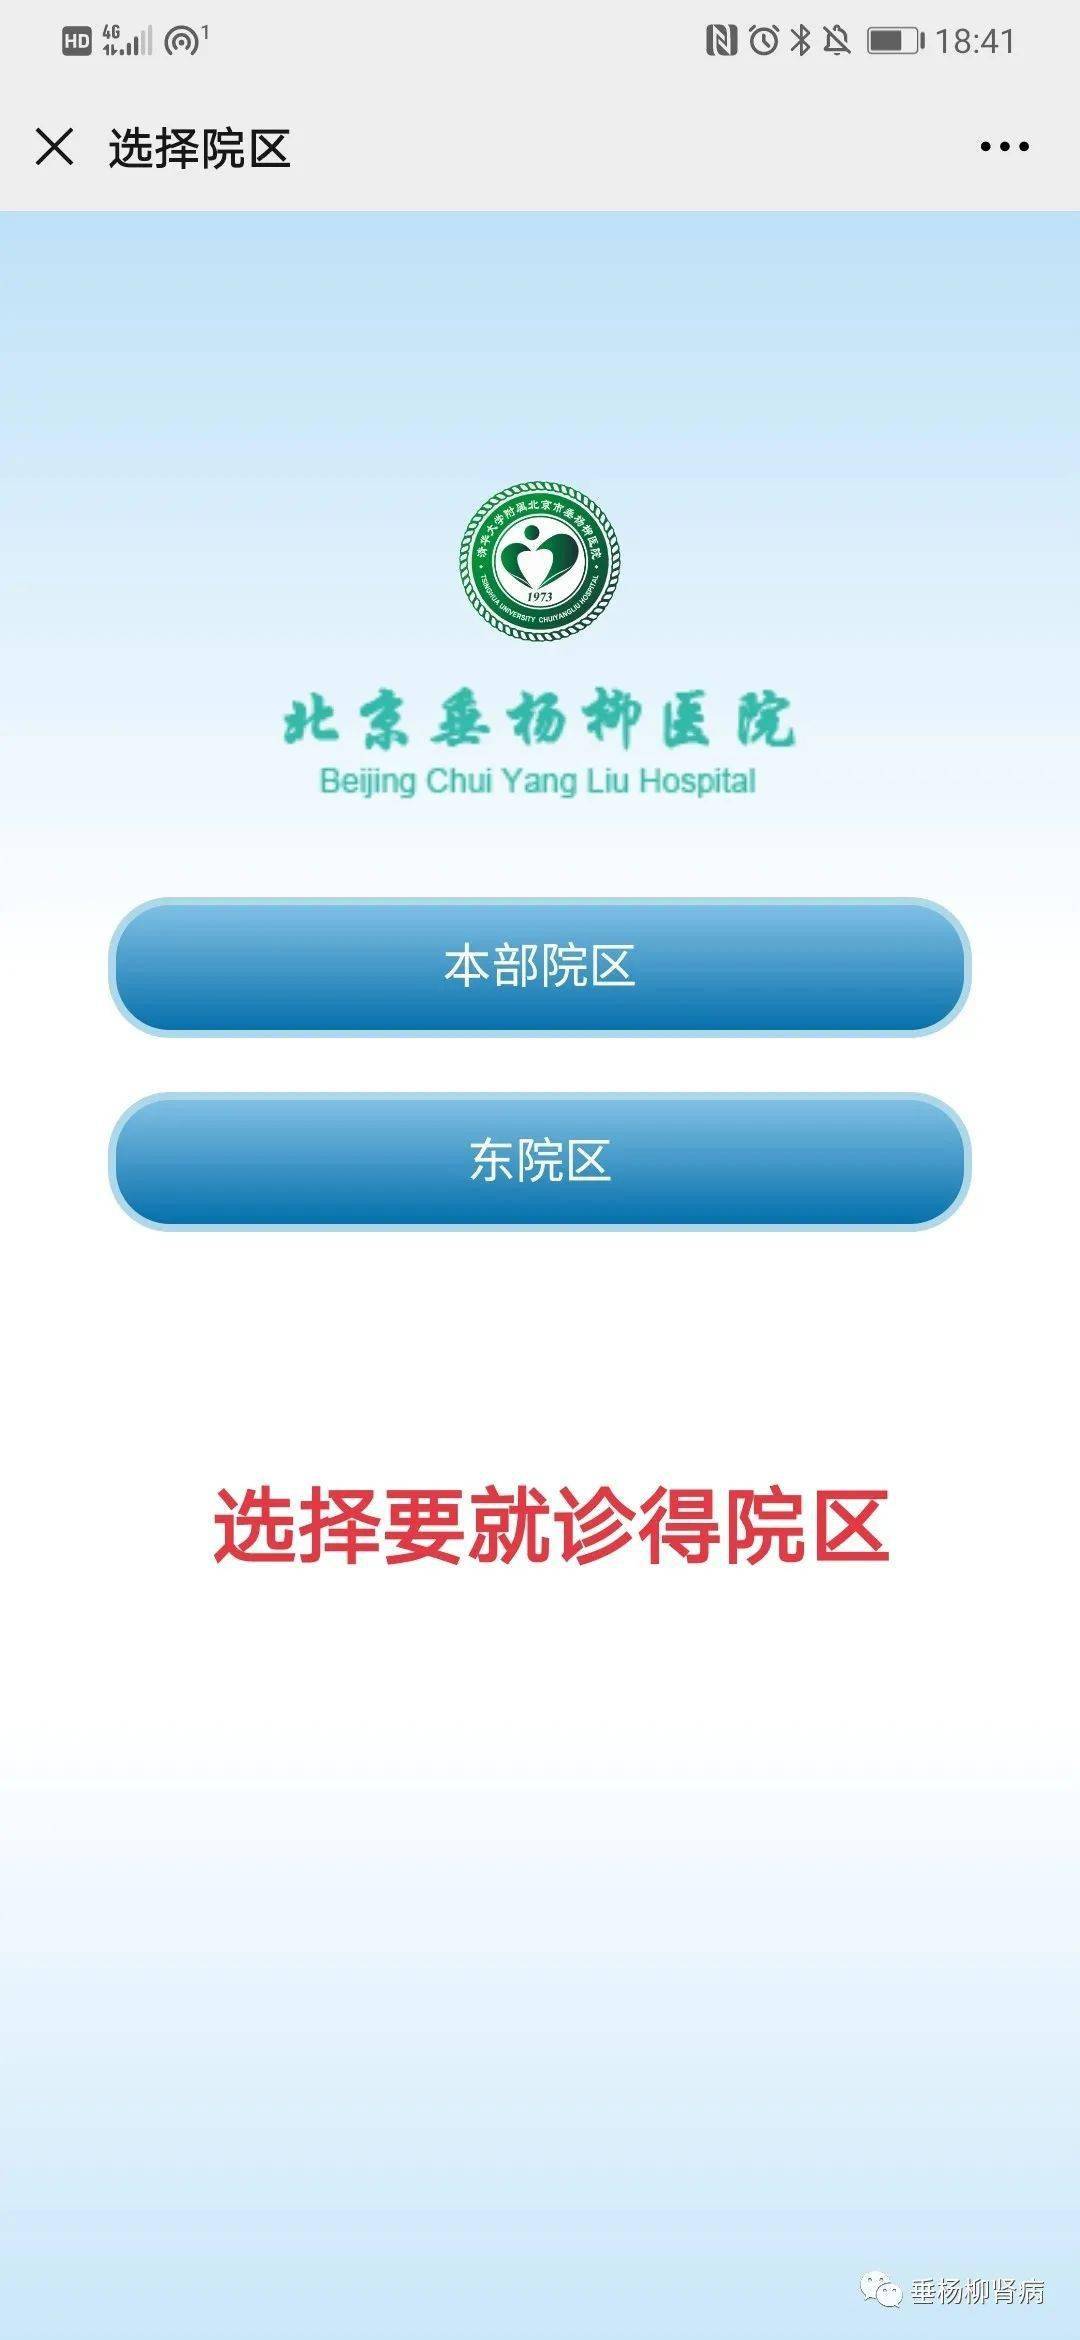 关于广东省中医院医院代诊预约挂号，伴您医路畅通的信息